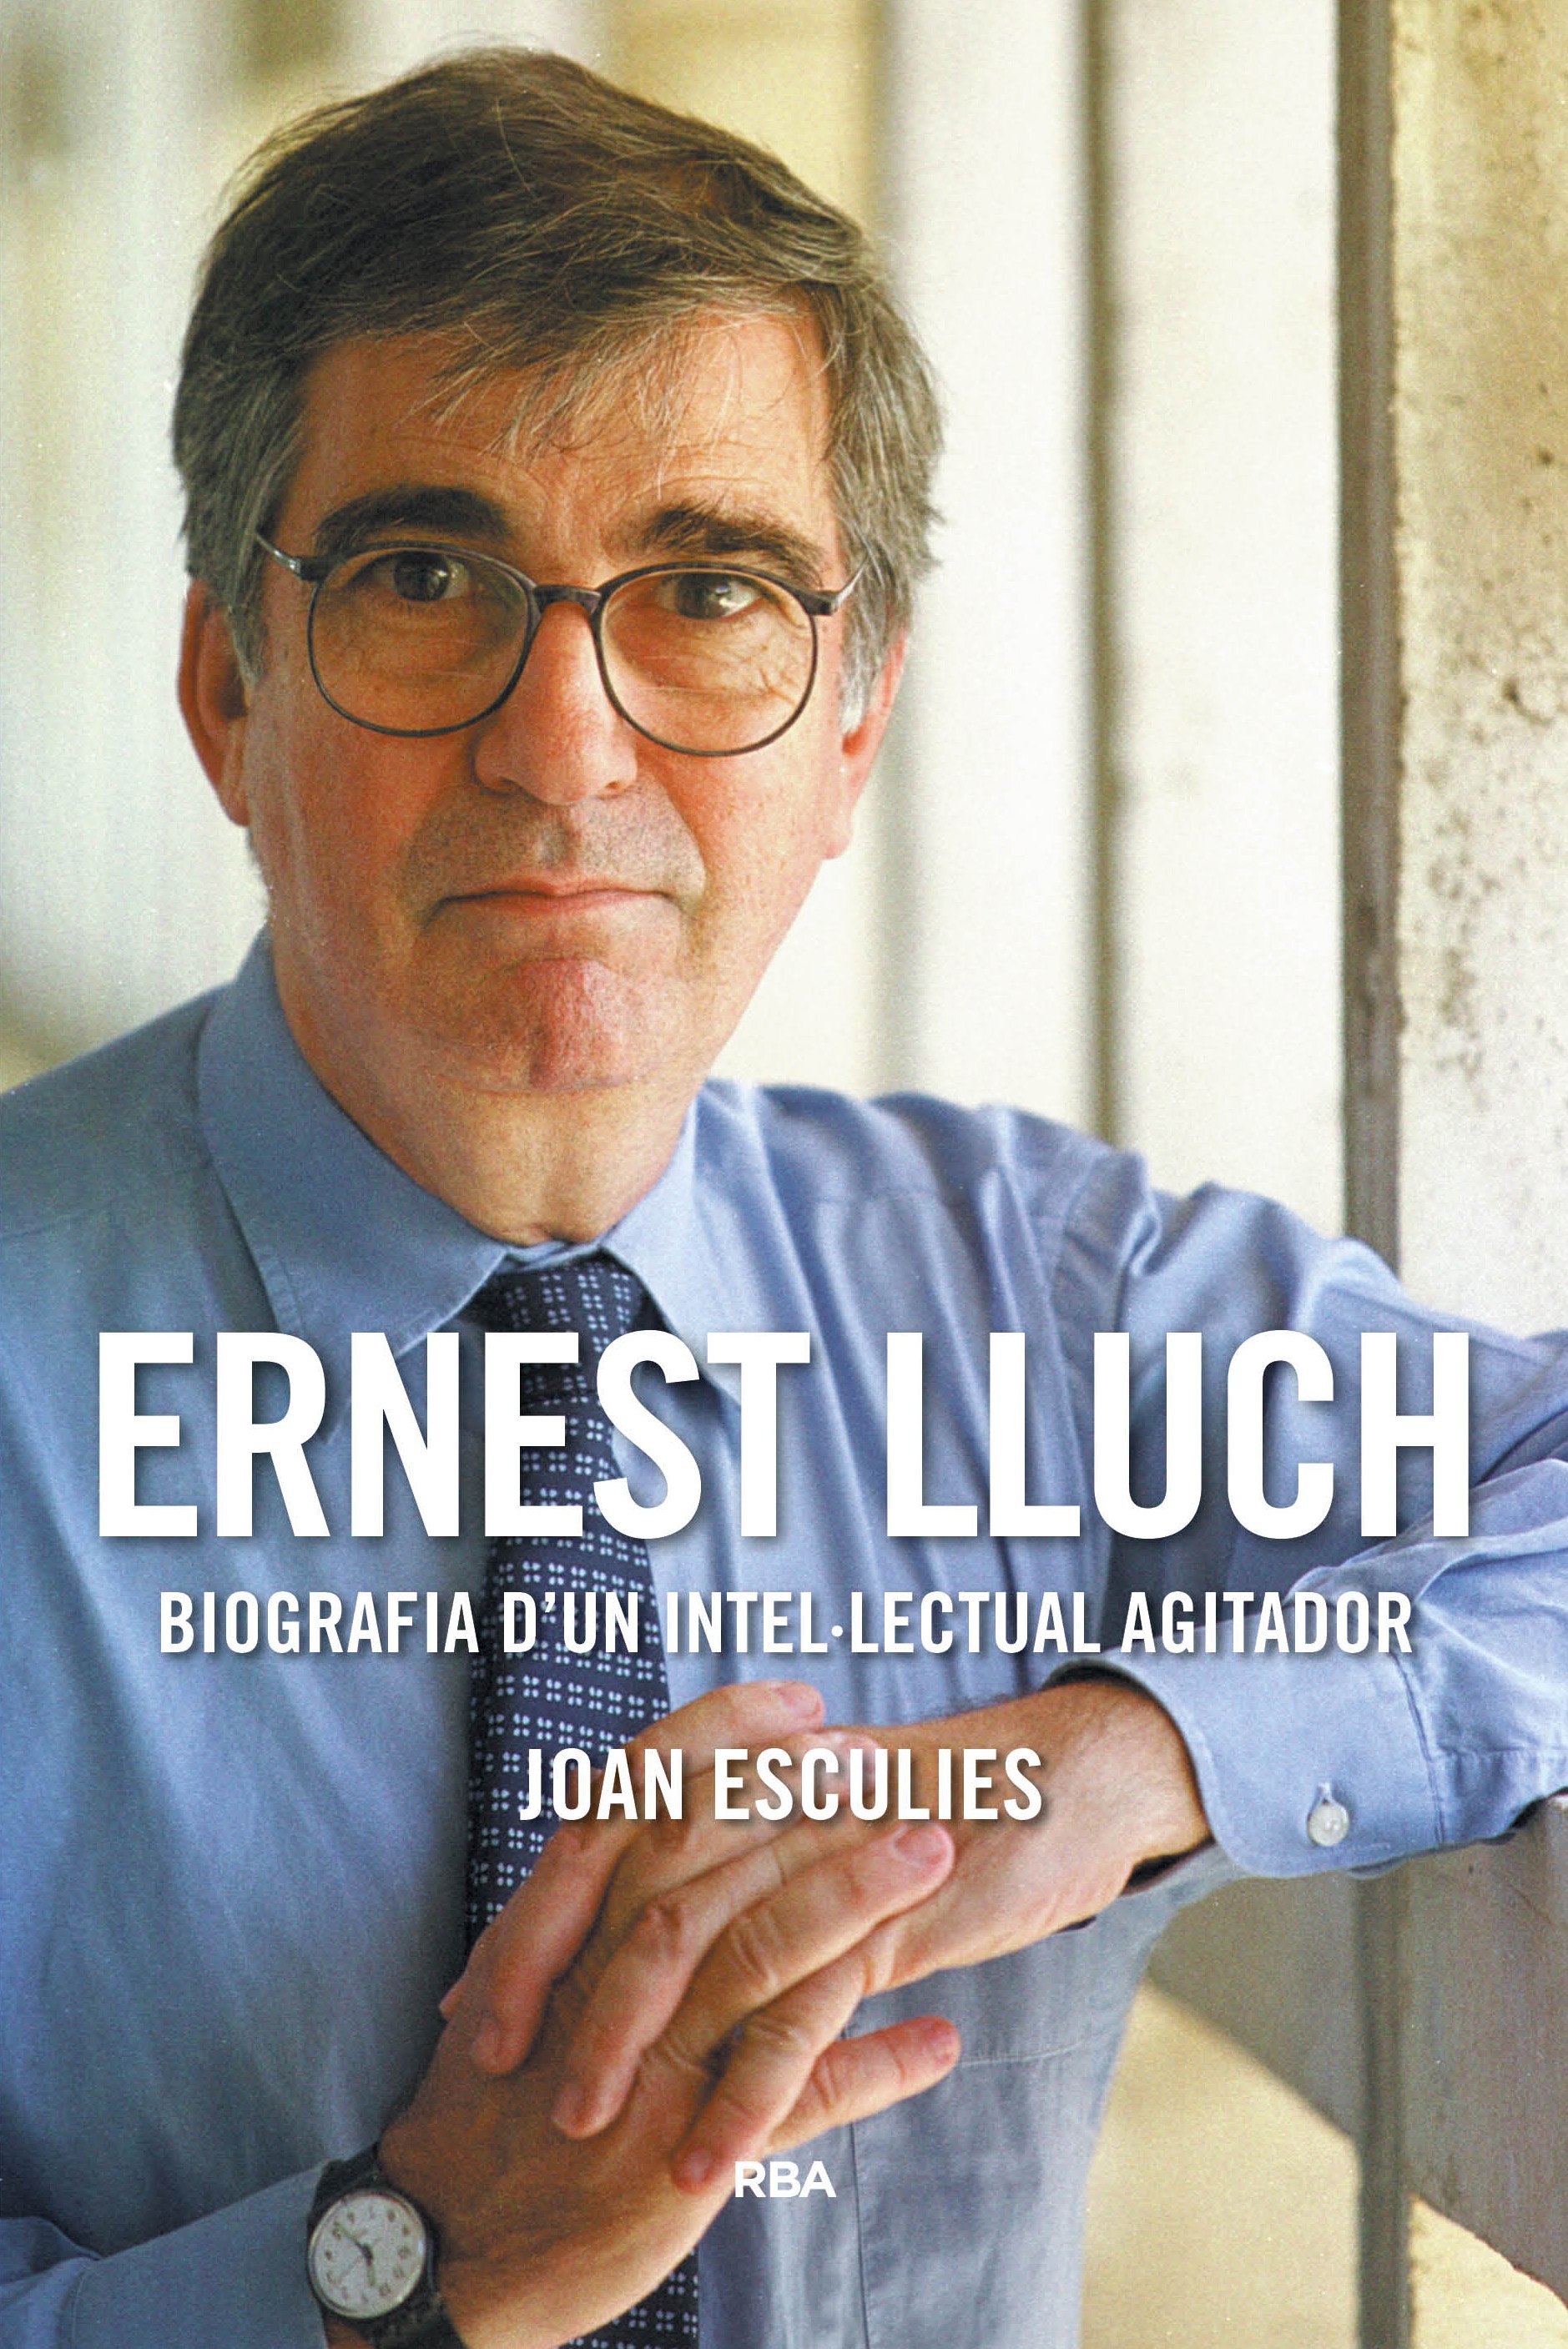 Joan Esculies: "Ernest Lluch mereixia una biografia encara que no l'haguessin matat"